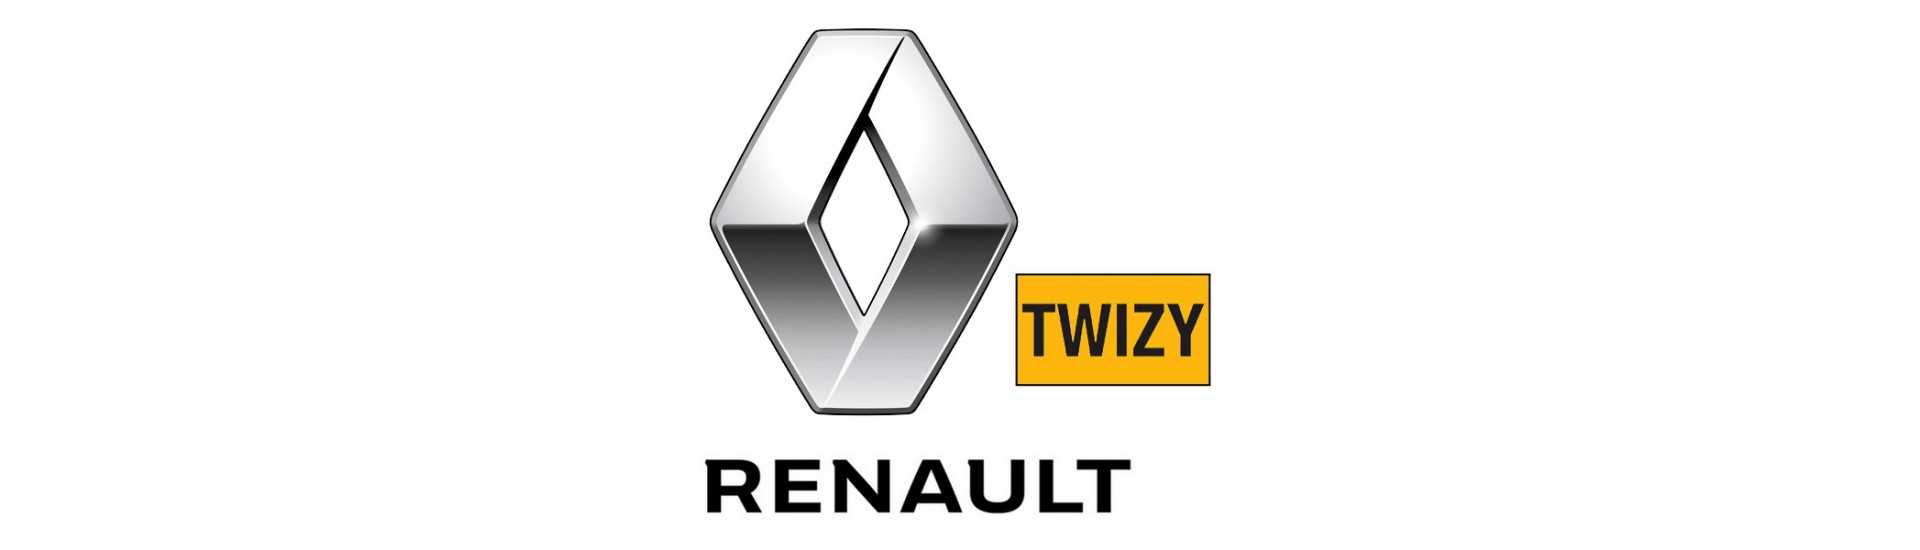 Crémaillère de direction pour car sans permis Renault Twizy